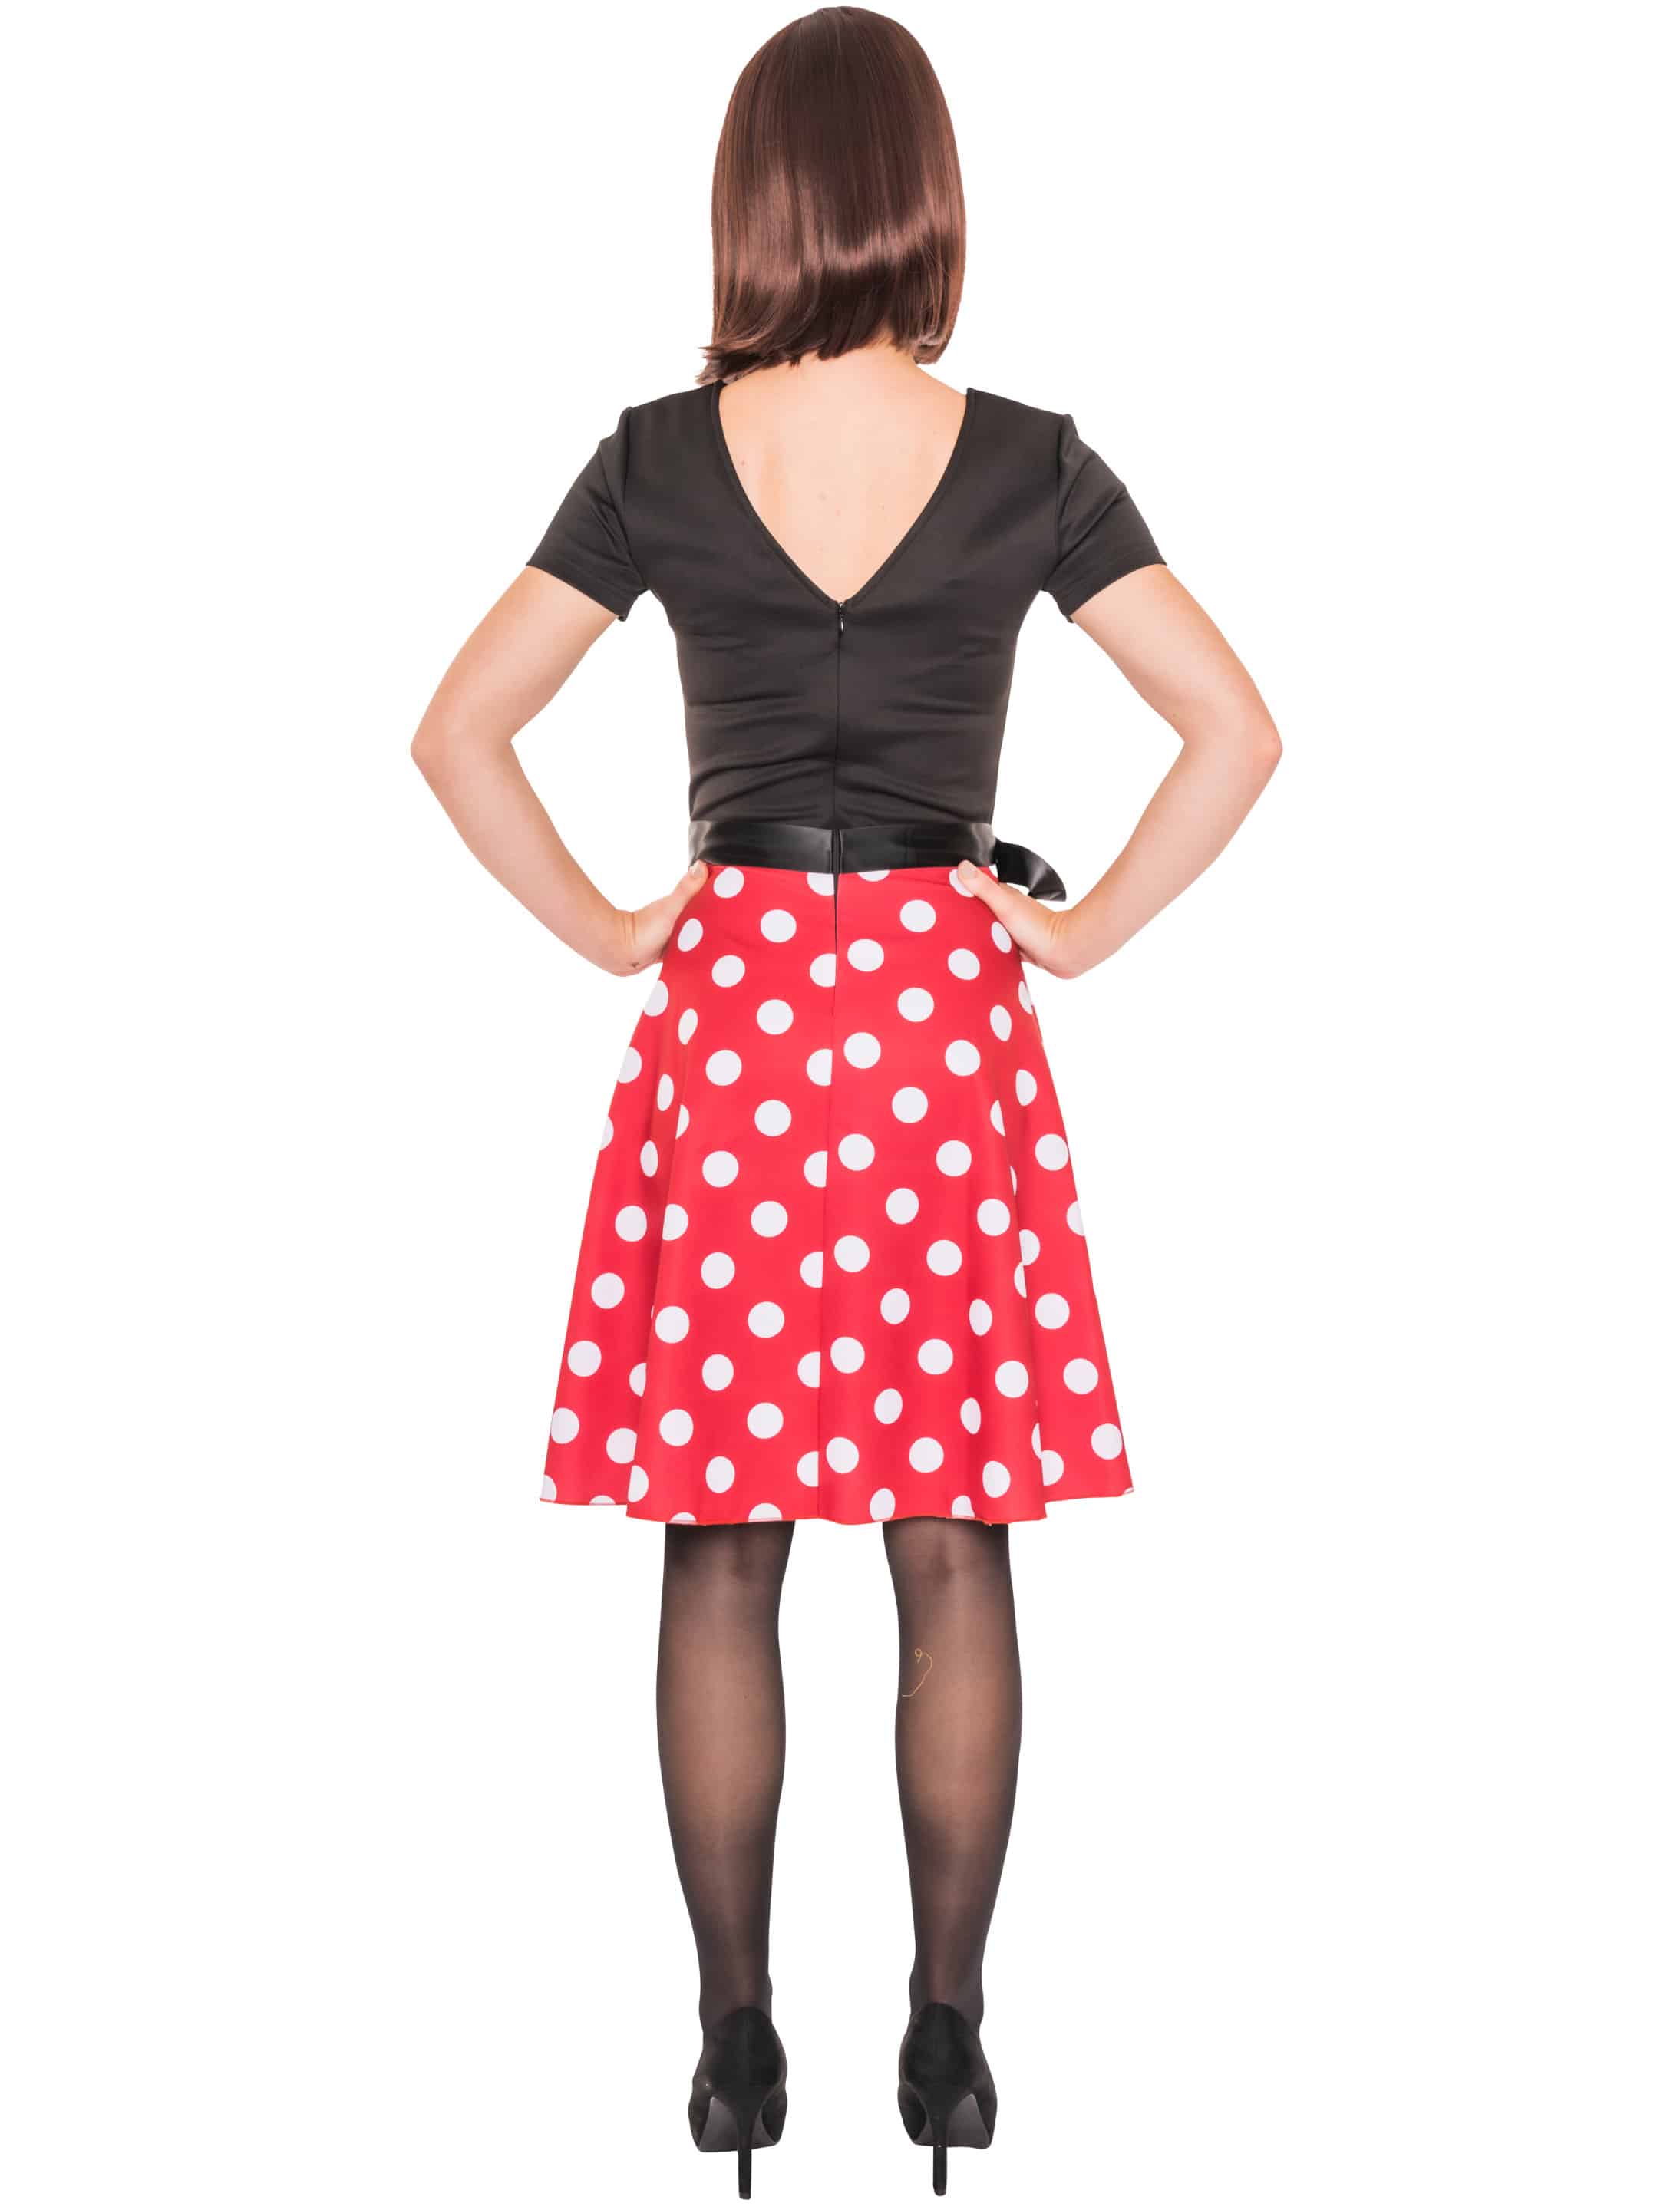 Kleid Maus mit Punkten schwarz/weiß/rot 3XL